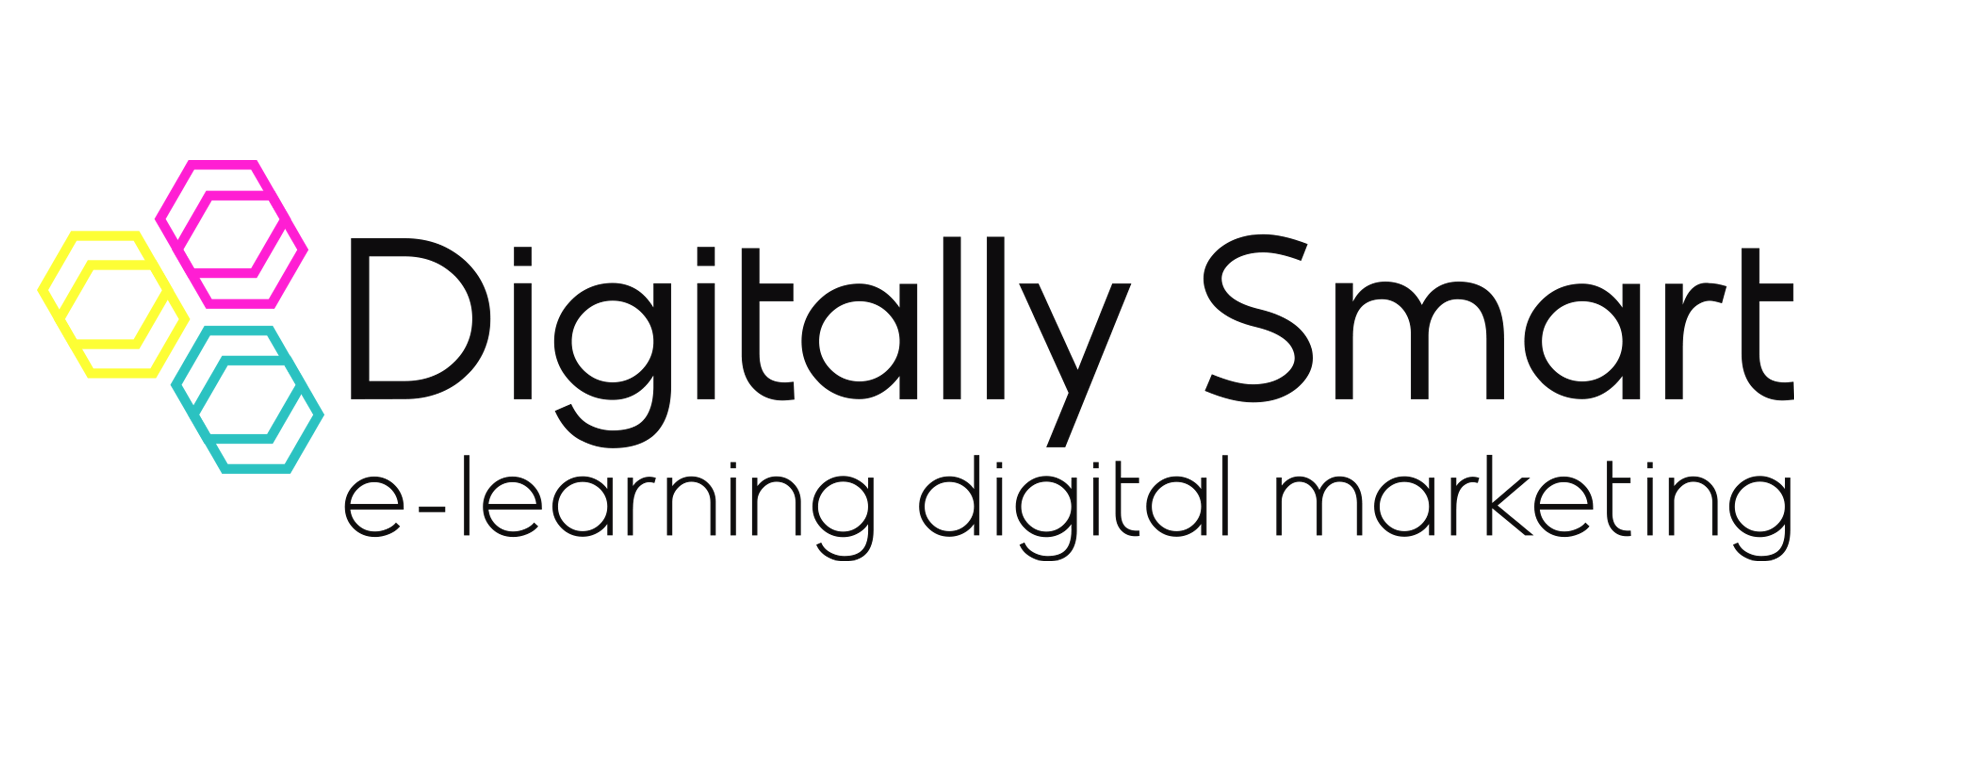 Digitally Smart Ltd.